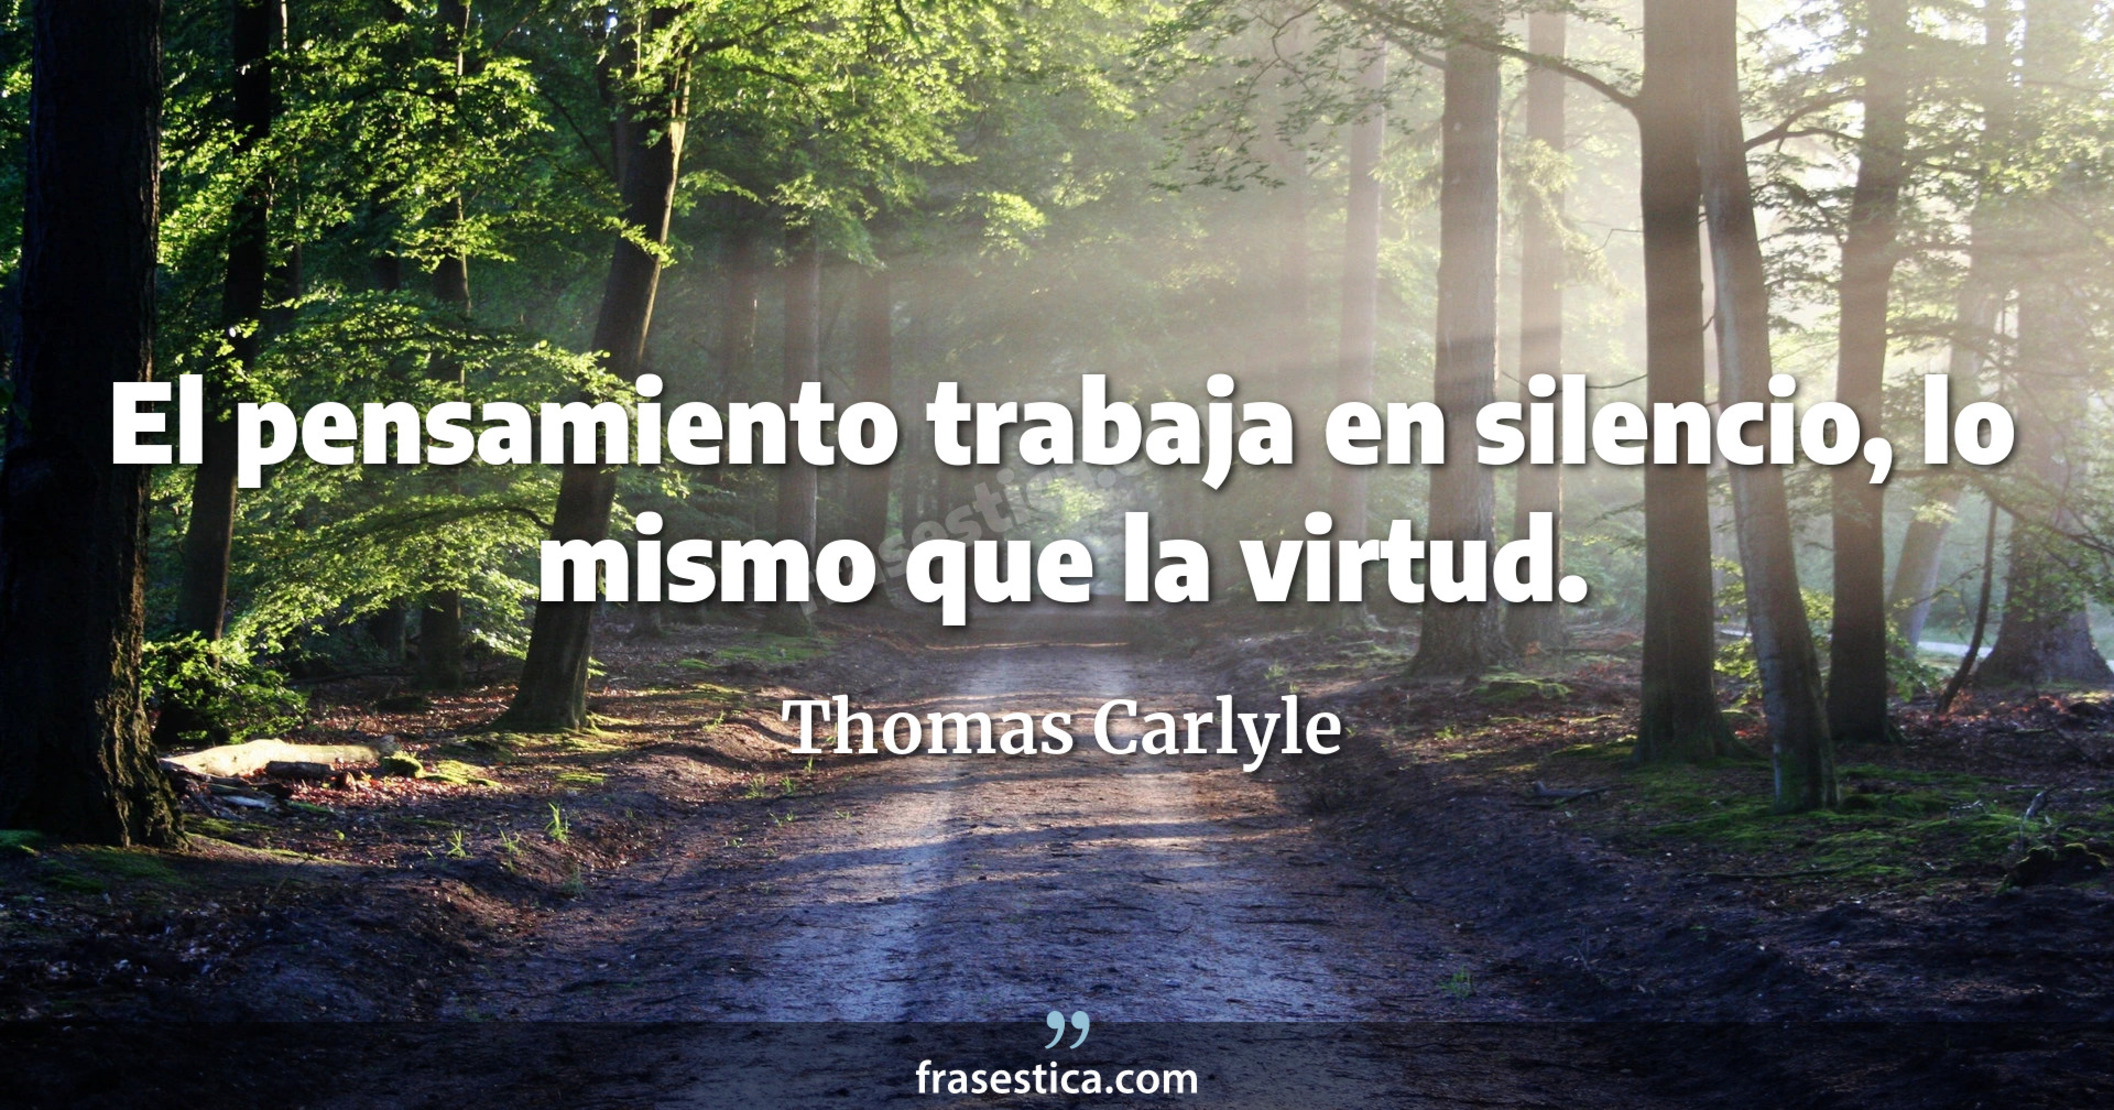 El pensamiento trabaja en silencio, lo mismo que la virtud. - Thomas Carlyle